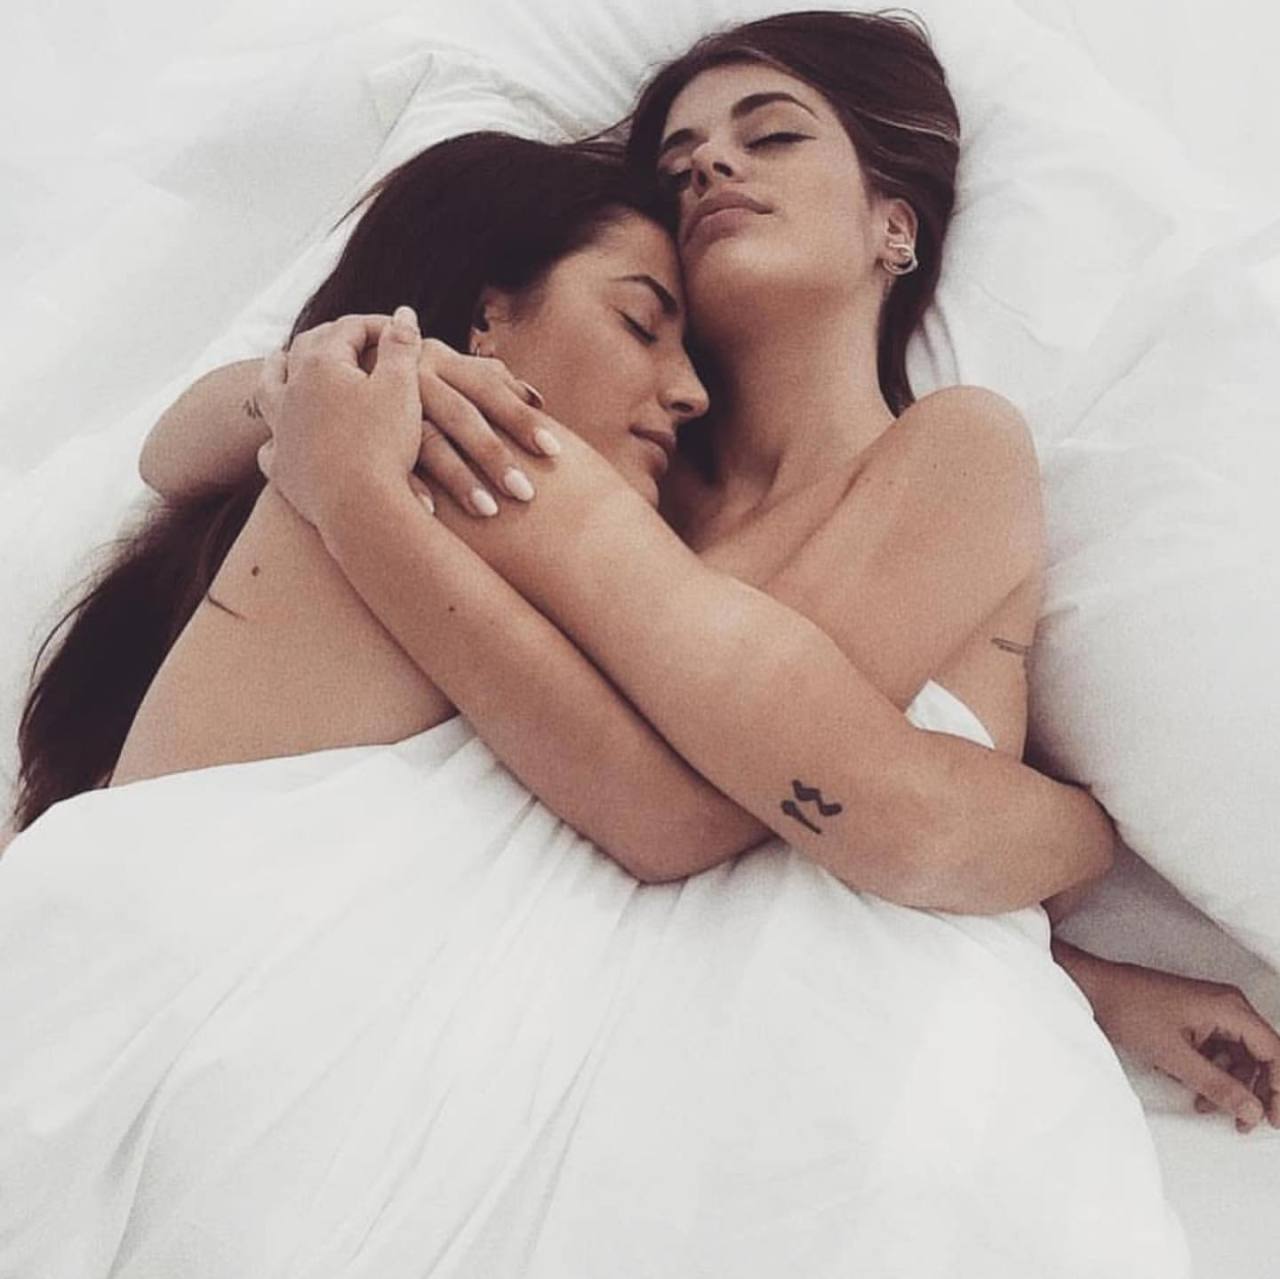 Lopez lesbian. Две девушки в кровати. Две девушки лежат в обнимку. Женская однополая любовь. Подружки спят в обнимку.